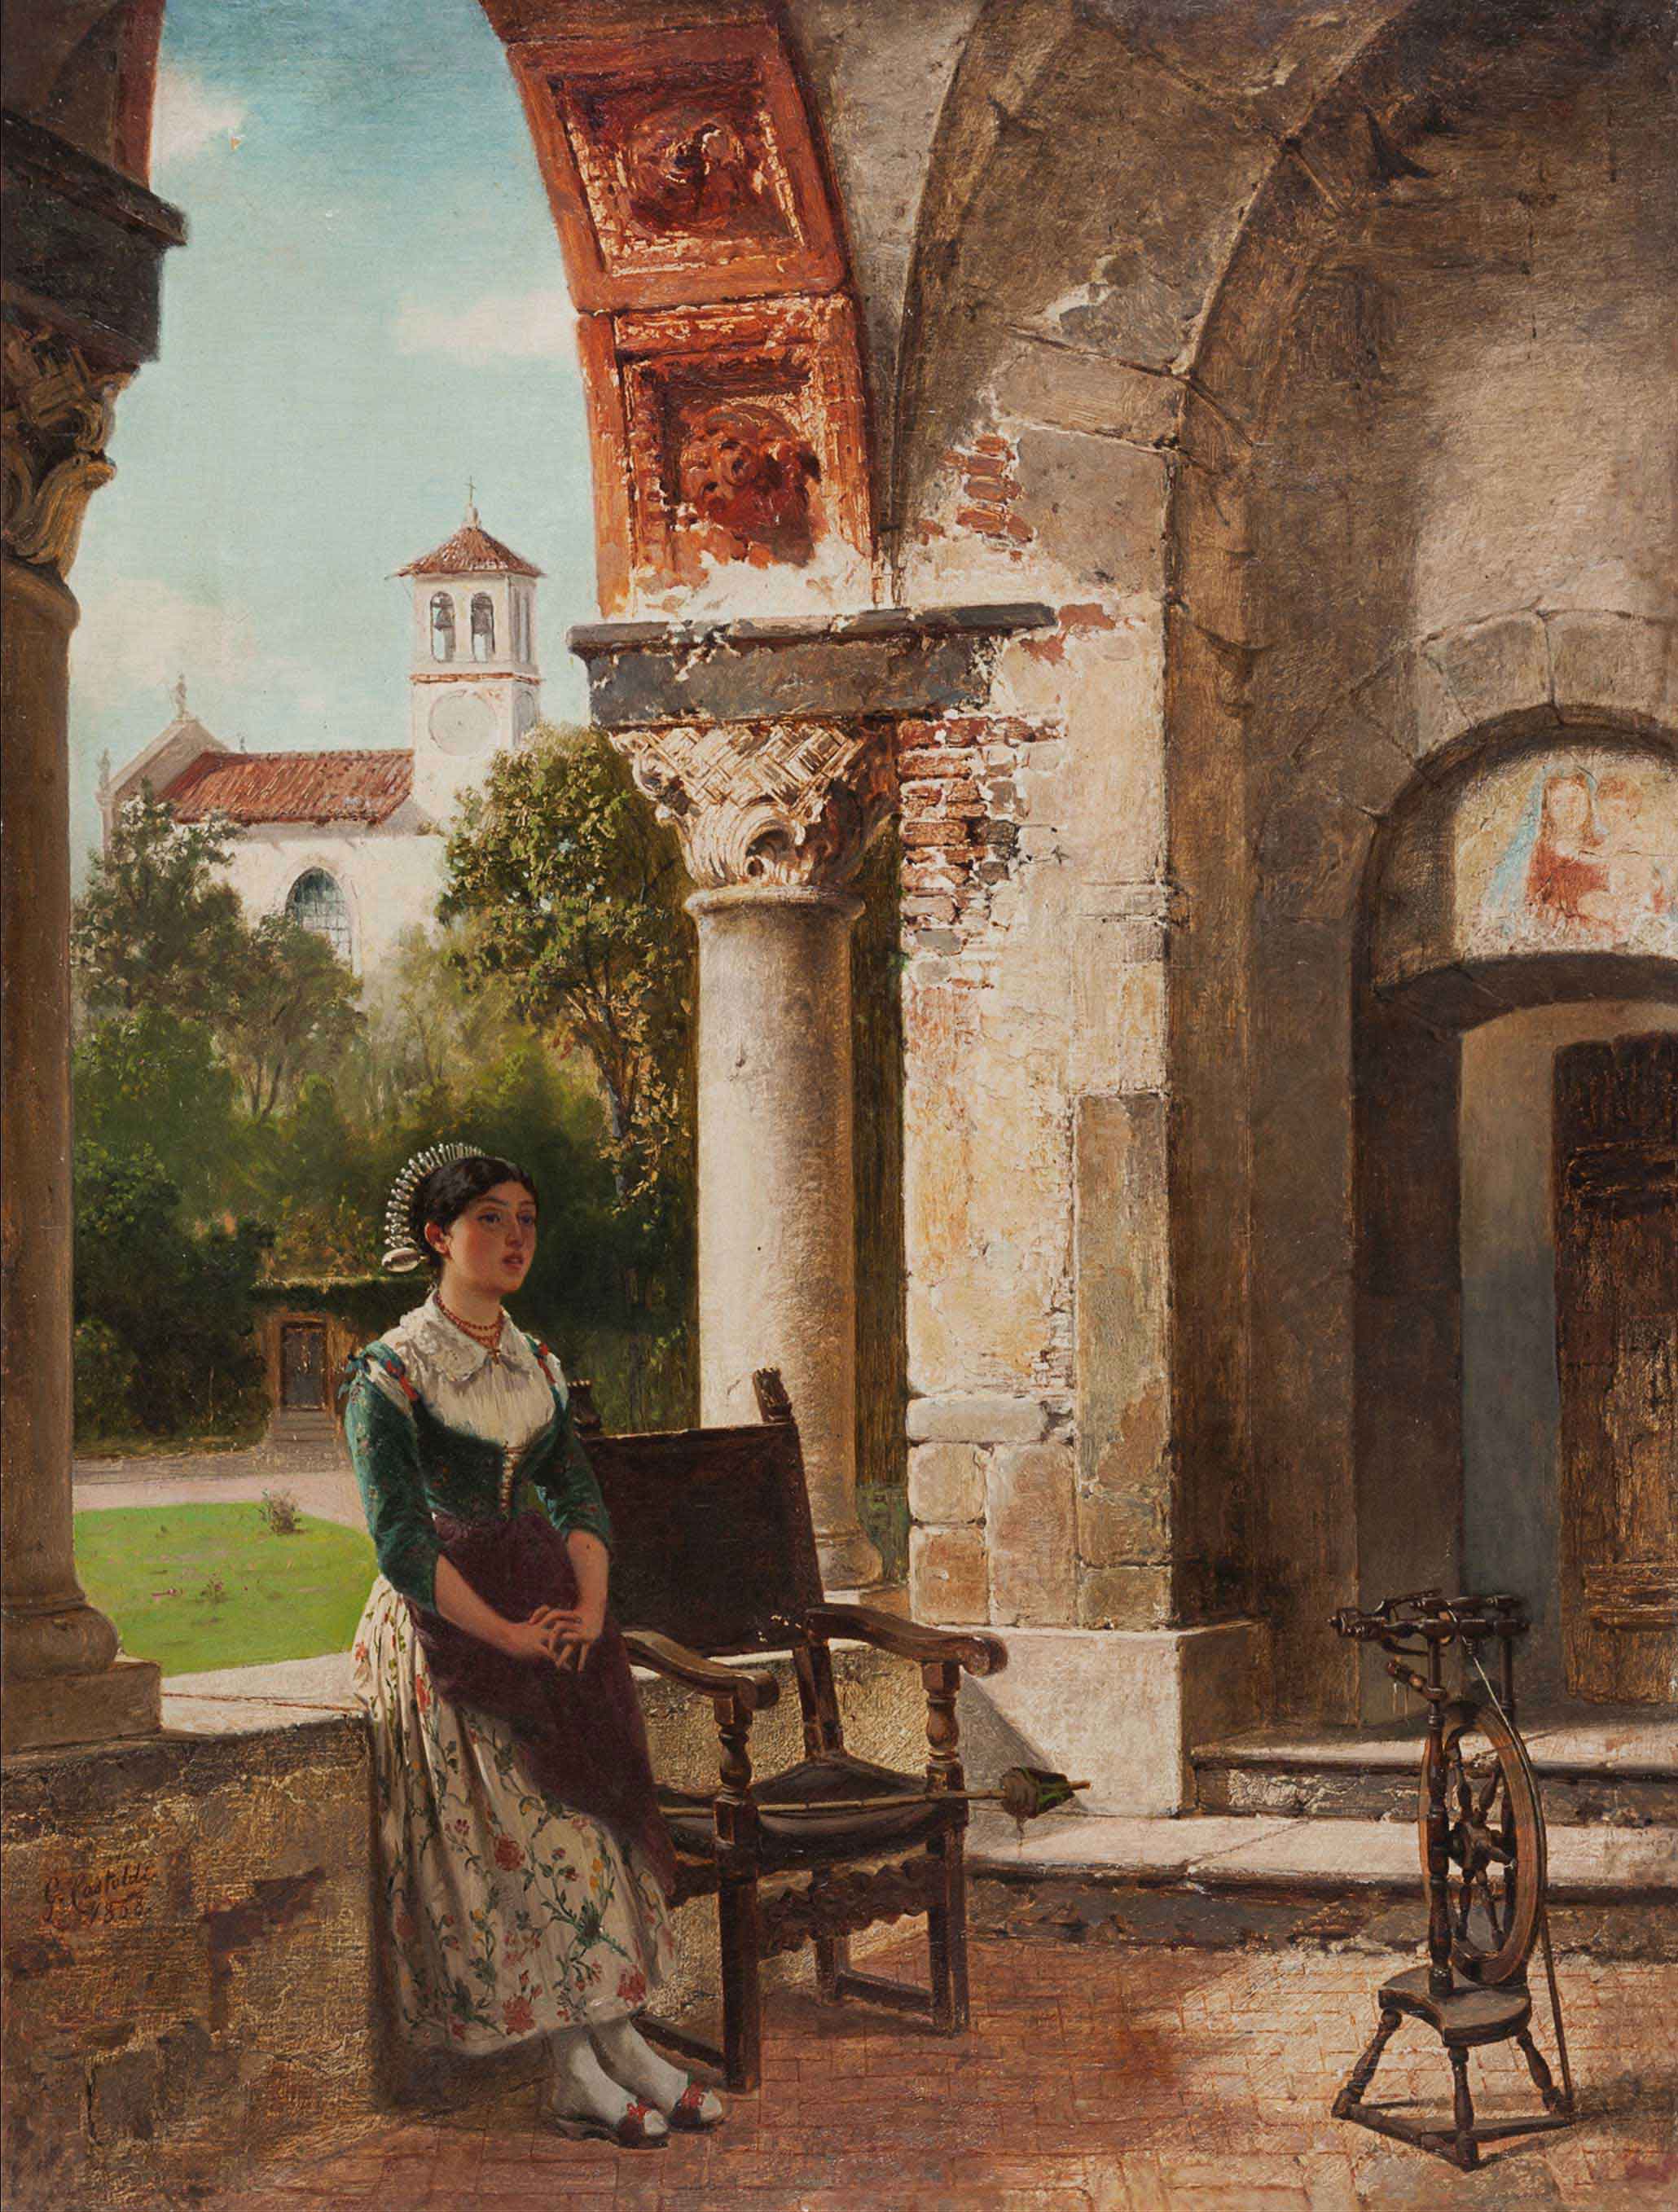 L’attesa, 1868